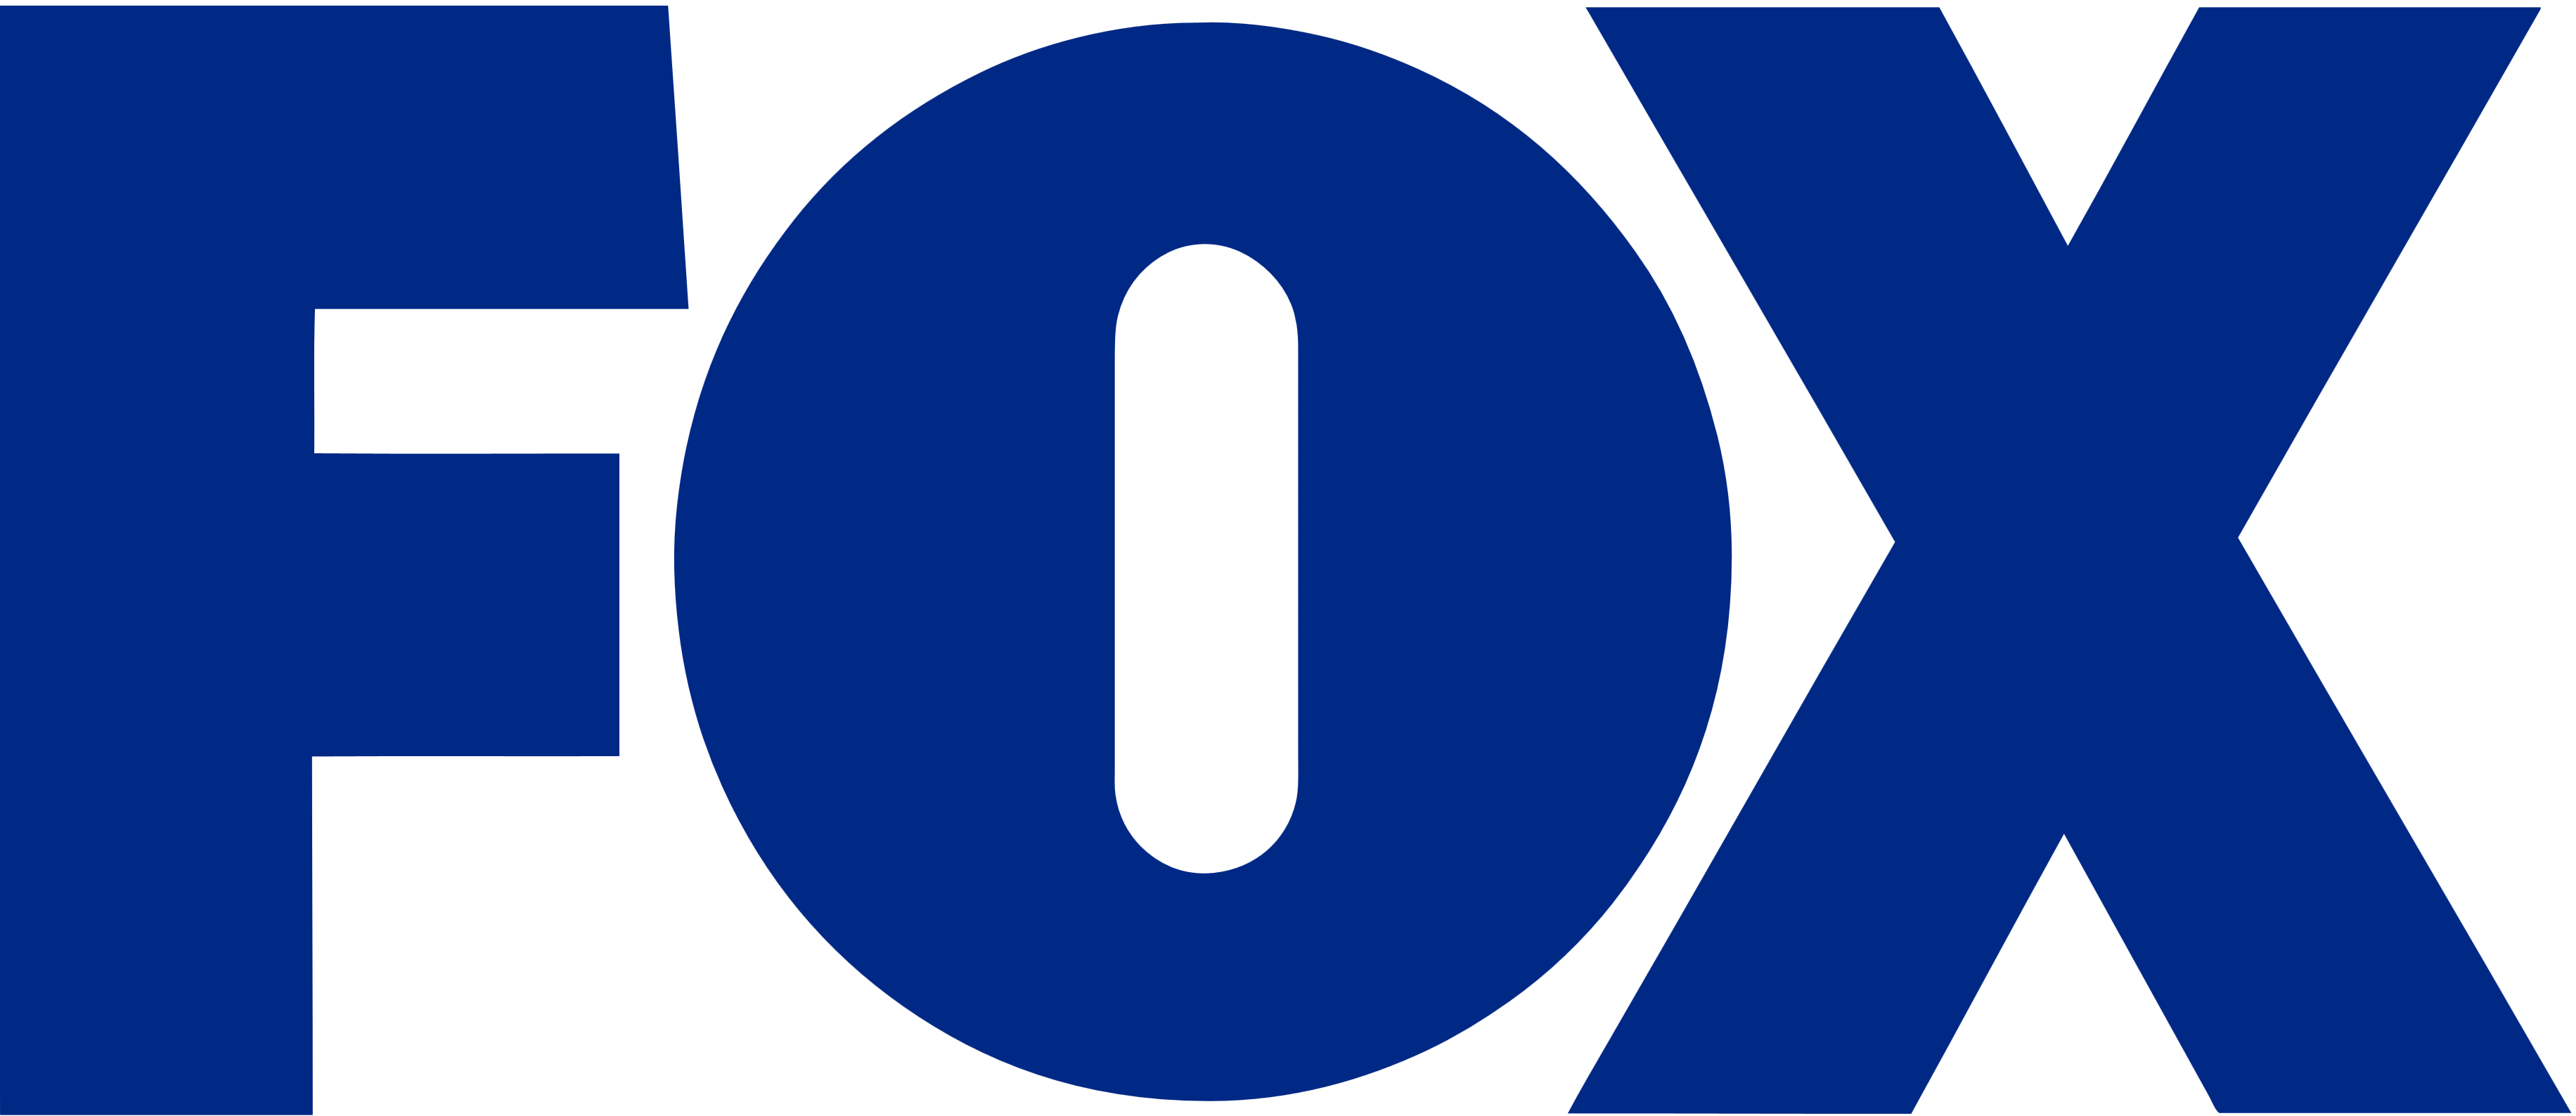 Fox Life Channel Logo